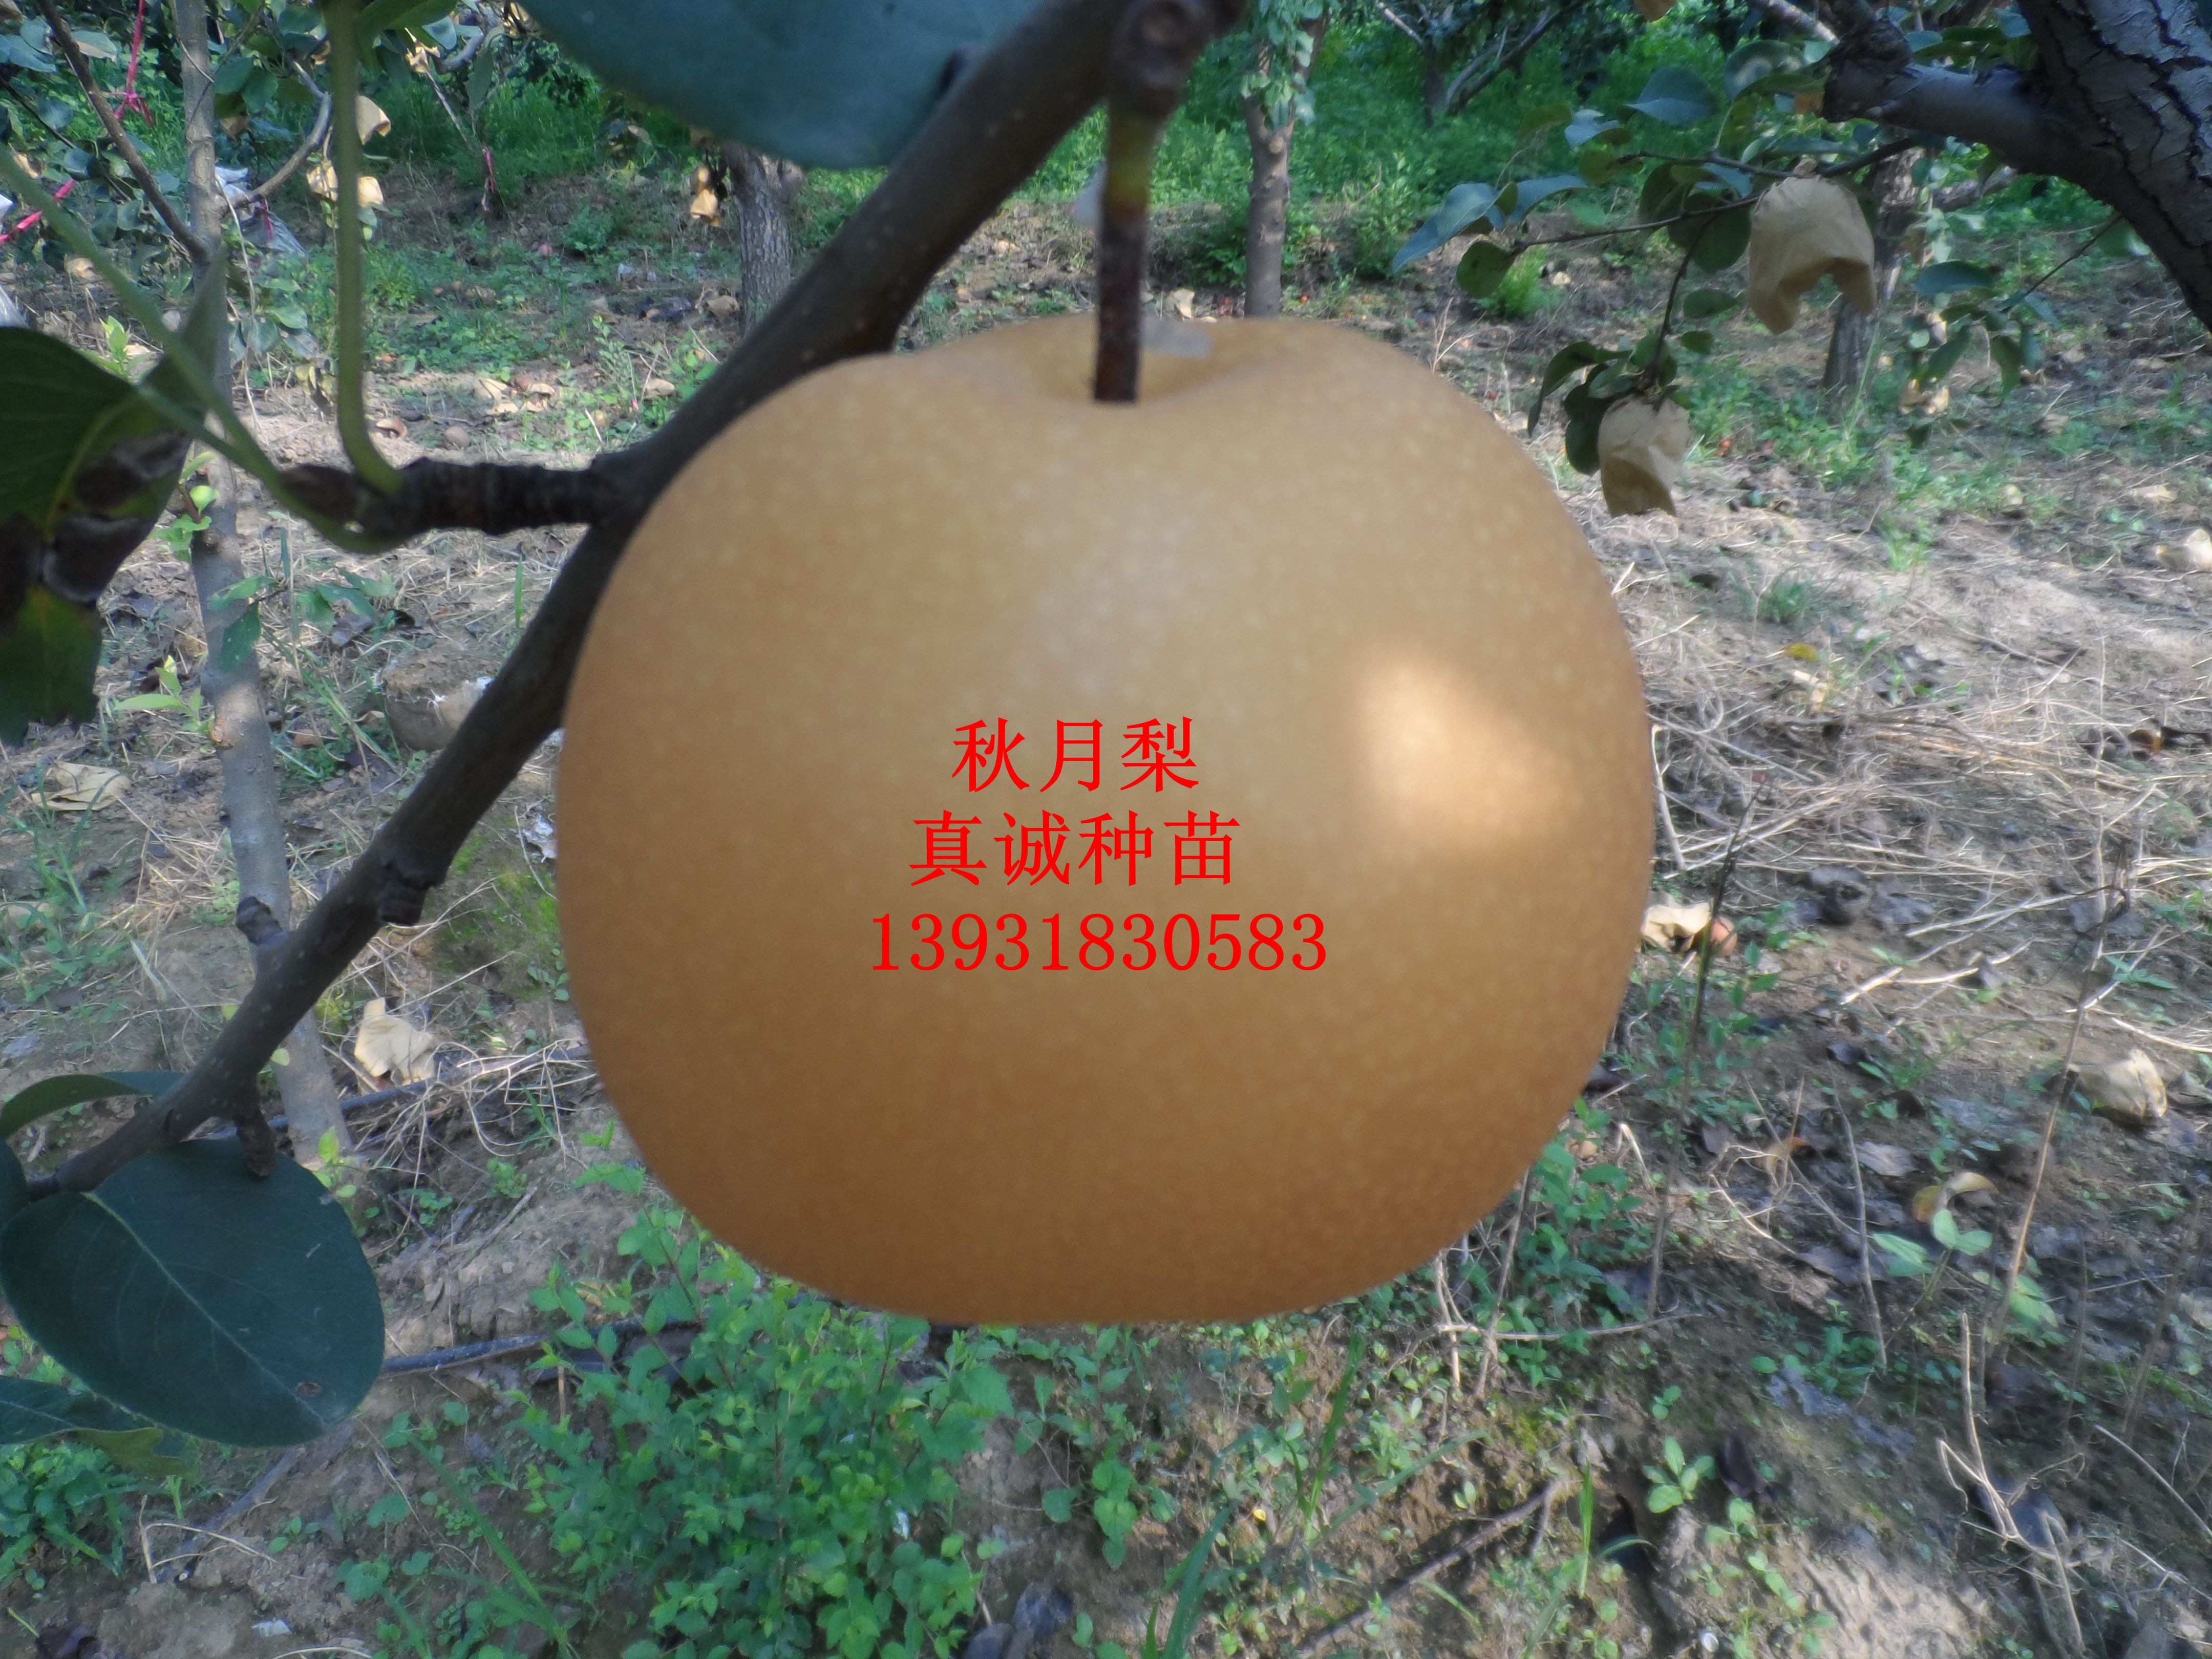 真诚种苗 秋月梨苗 价格低廉 品种纯正 科学技术 秋月梨树苗 梨苗 种植3